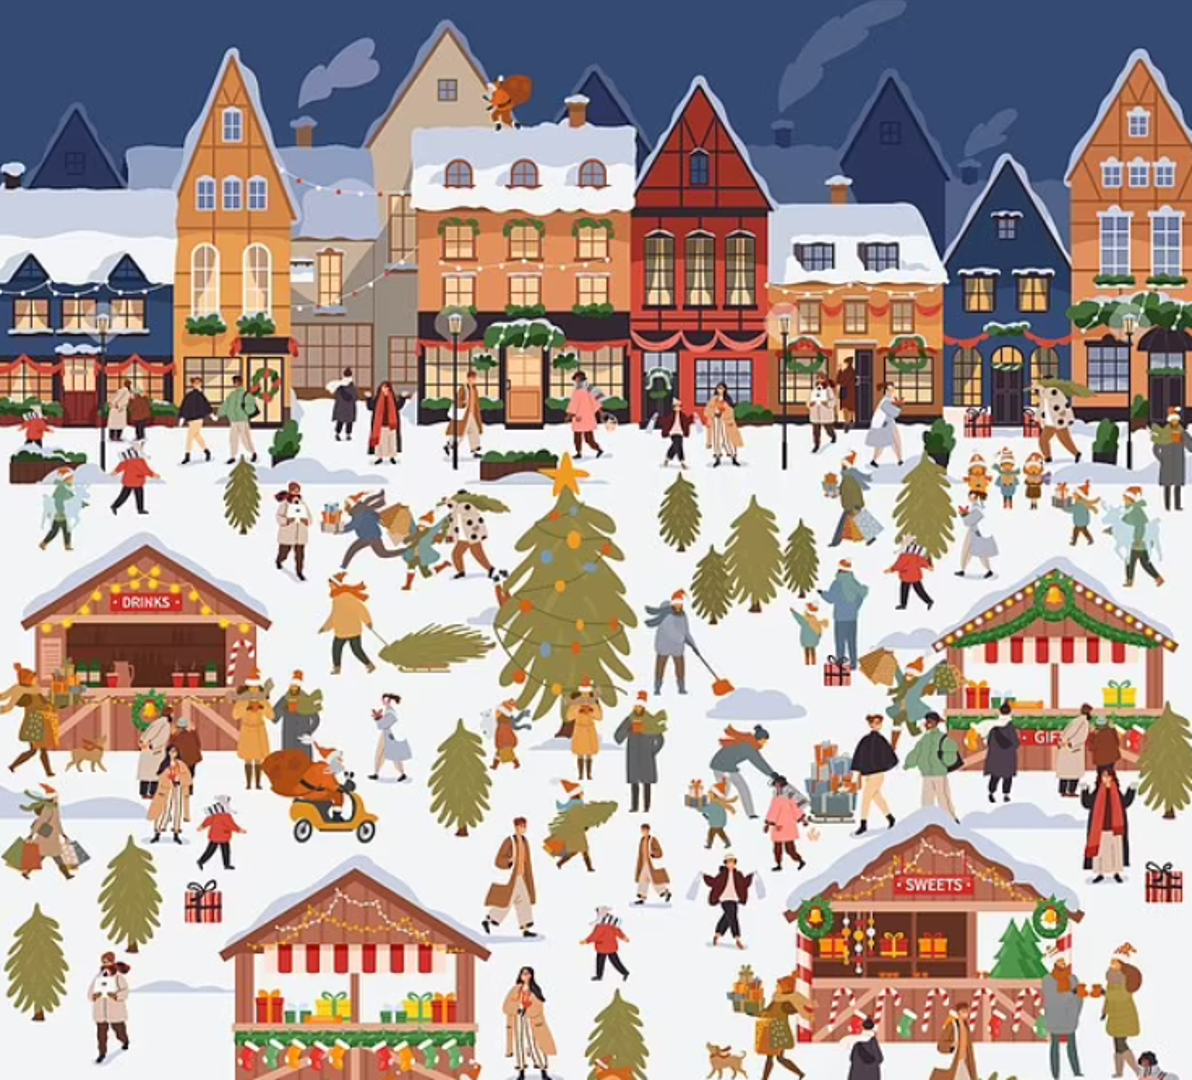 Na ilustraciji božićne tržnice, sakrio se crvendać kojeg treba pronaći među kupcima i božićnim drvcima.